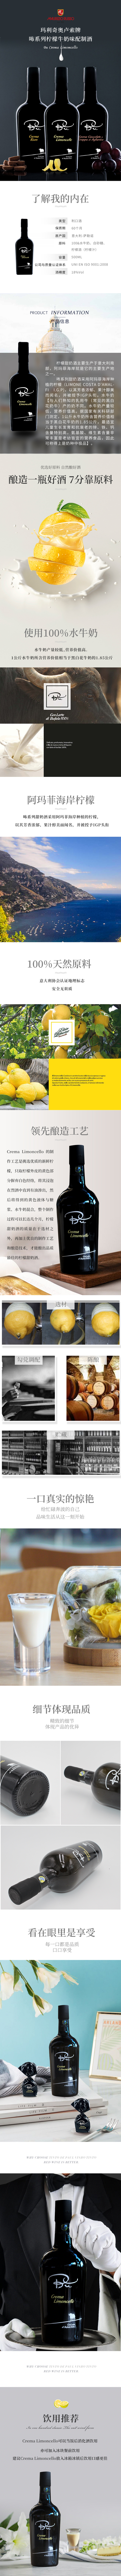 玛利奇奥卢索牌咘系列柠檬牛奶味配制酒